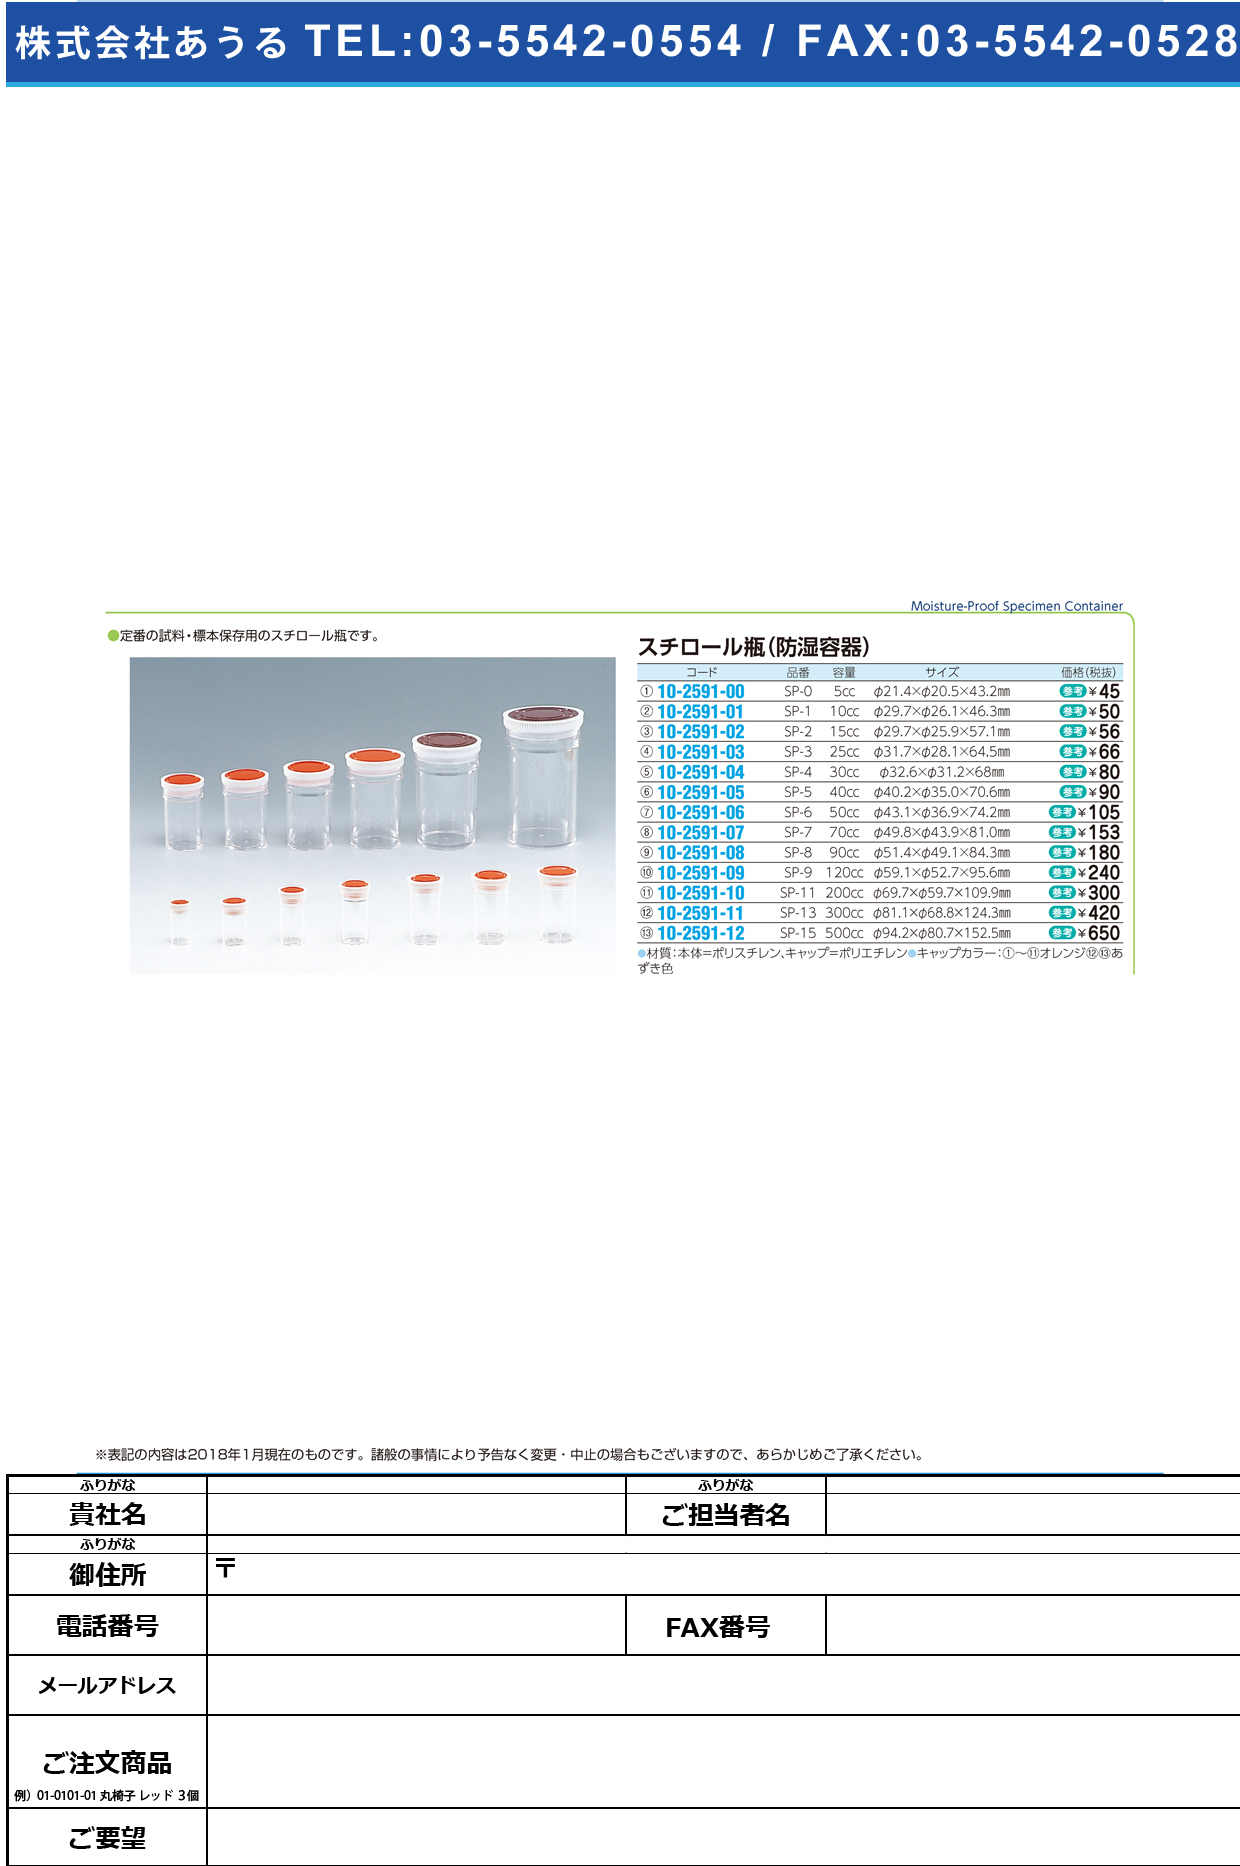 (10-2591-09)スチロール瓶透明（押込蓋） SP-9(120CC) ｽﾁﾛｰﾙﾋﾞﾝﾄｳﾒｲ フタ：オレンジ（基本色）【1本単位】【2018年カタログ商品】